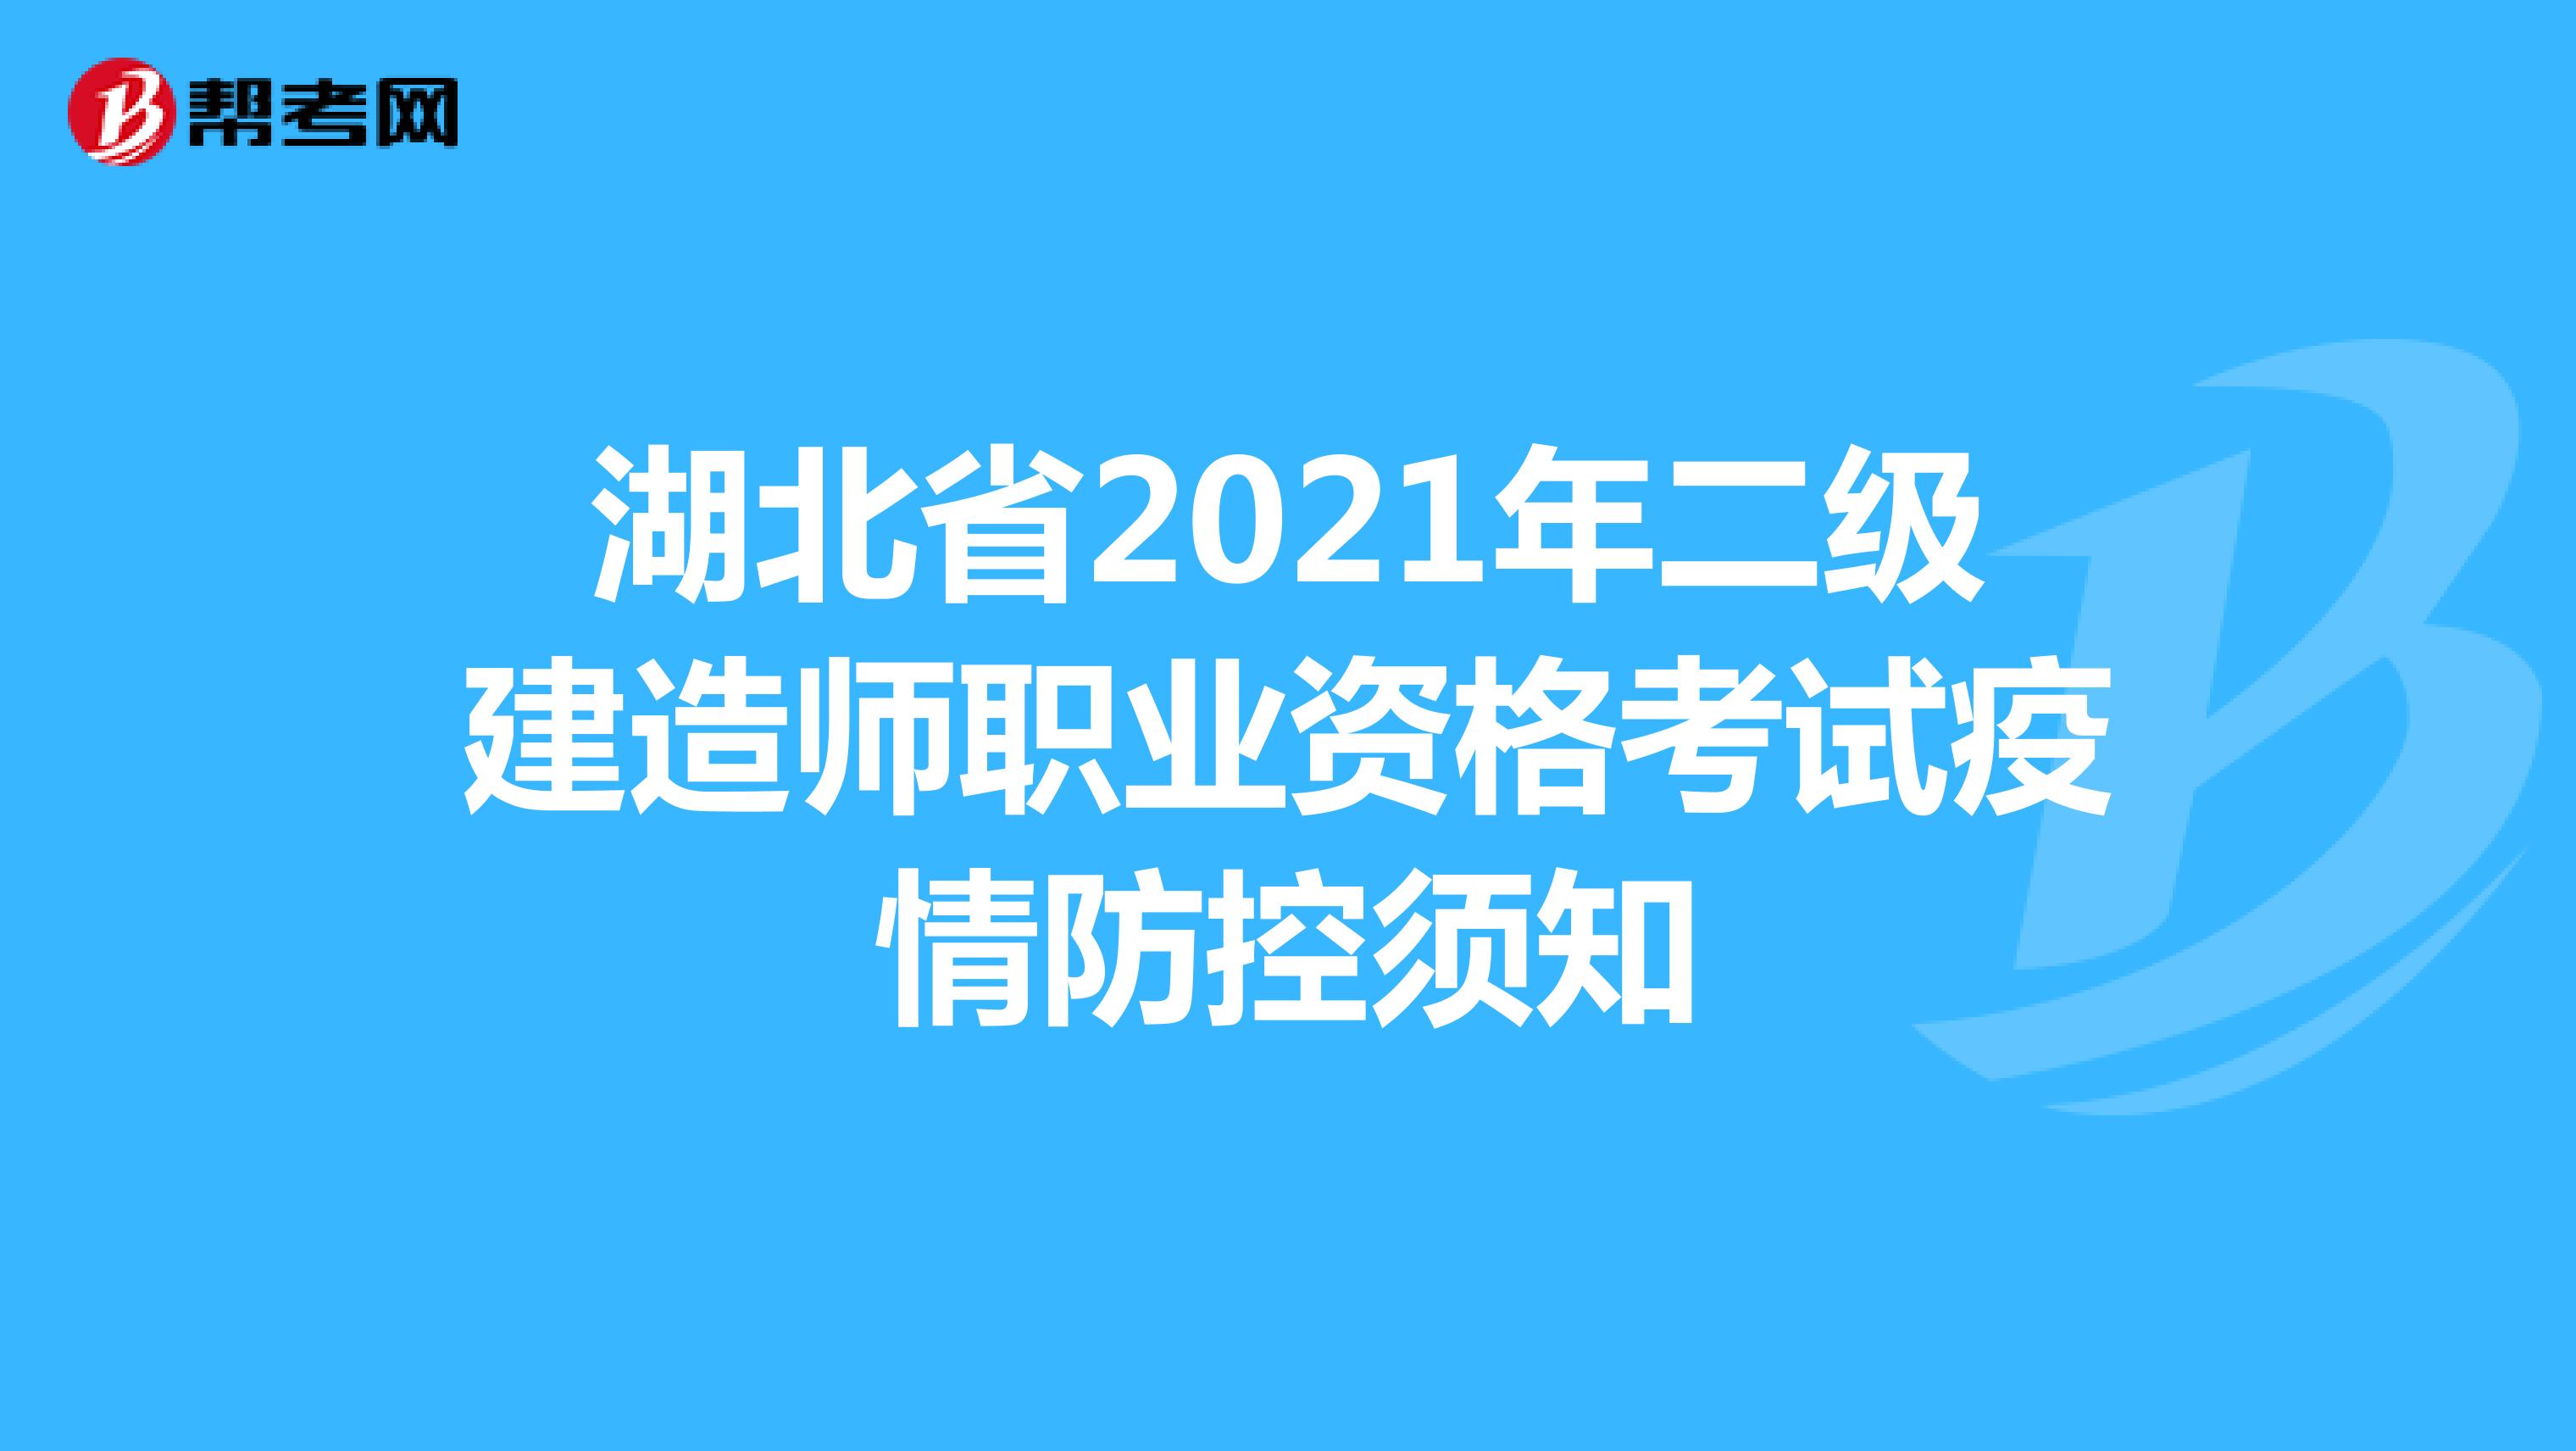 湖北省2021年二级建造师职业资格考试疫情防控须知